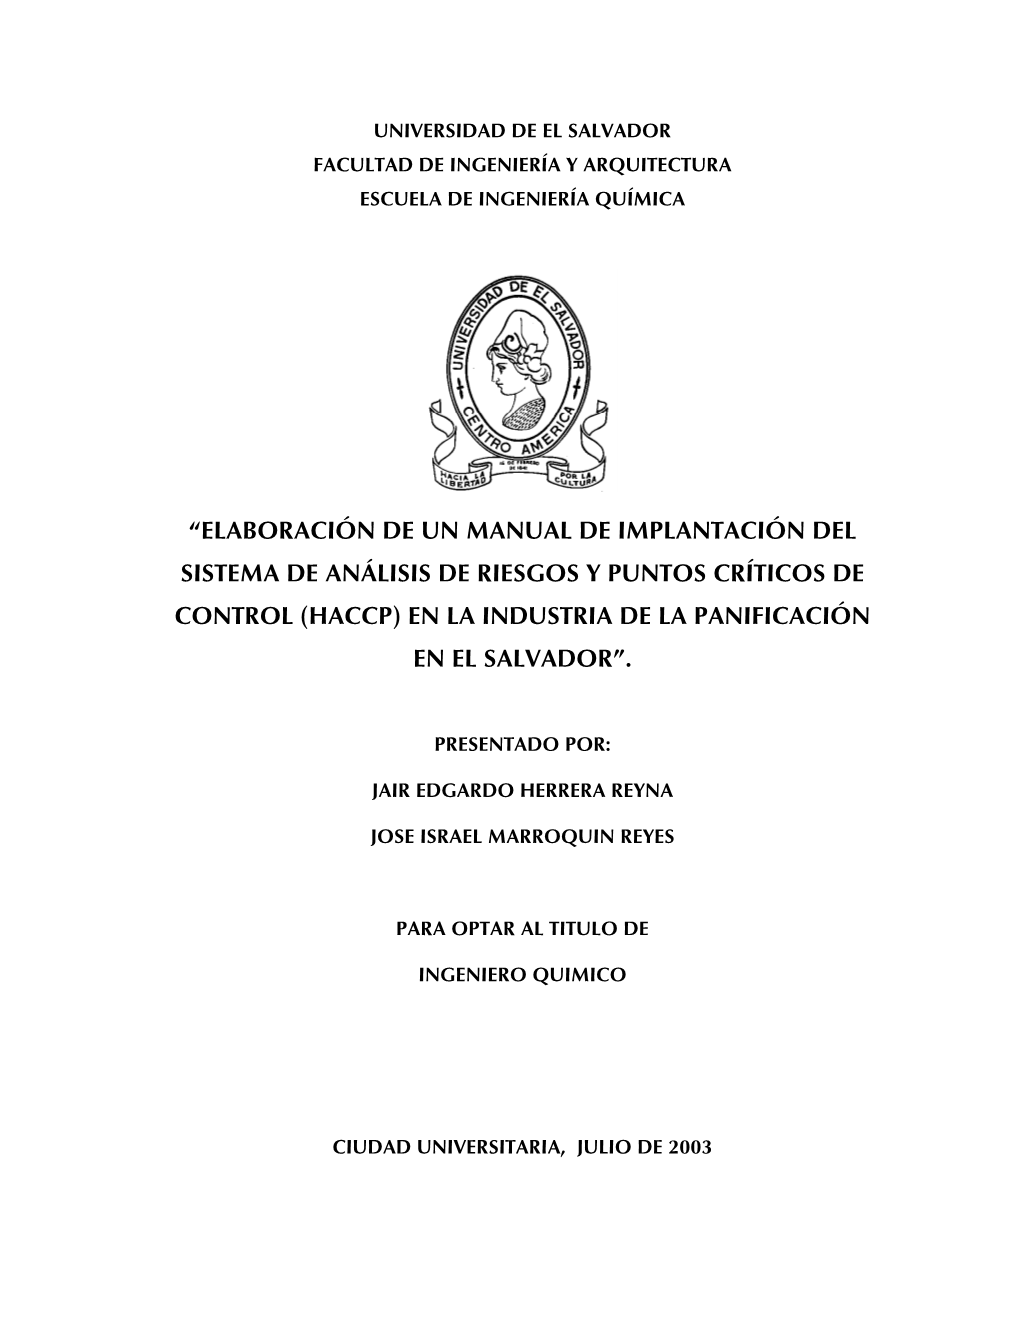 Elaboración De Un Manual De Implantación Del Sistema De Análisis De Riesgos Y Puntos Críticos De Control (Haccp) En La Industria De La Panificación En El Salvador”